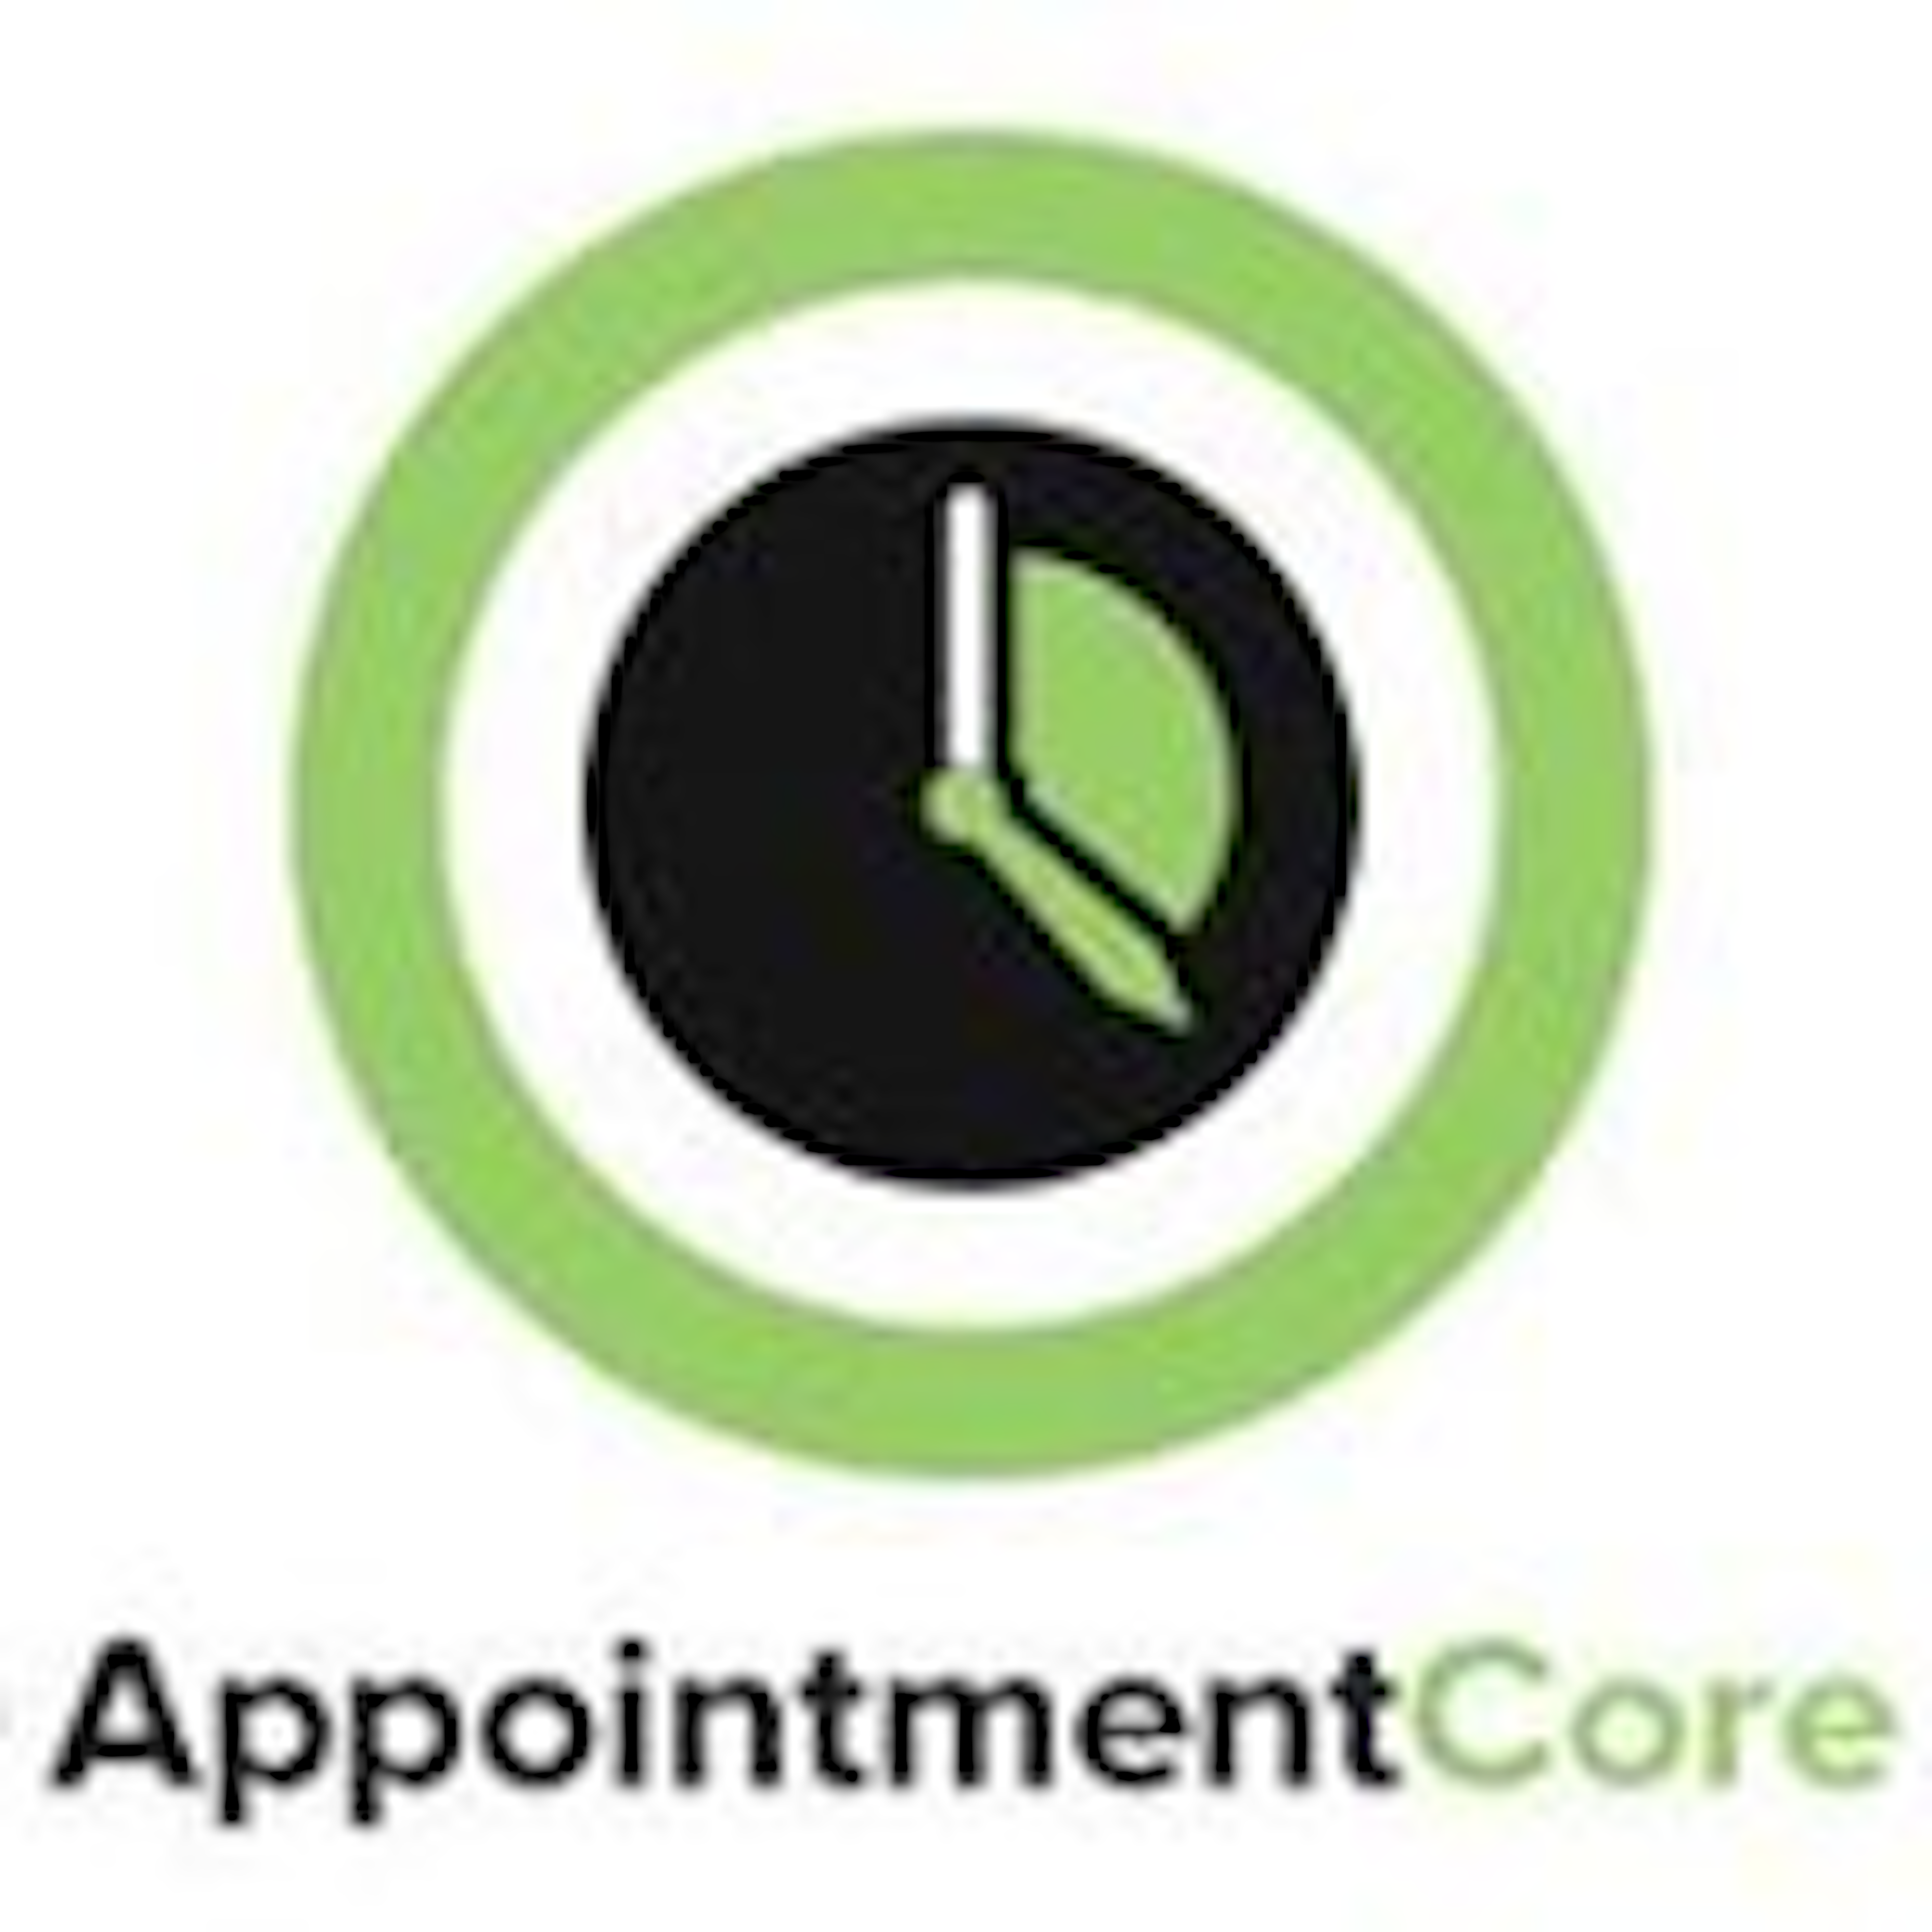 AppointmentCore Logo